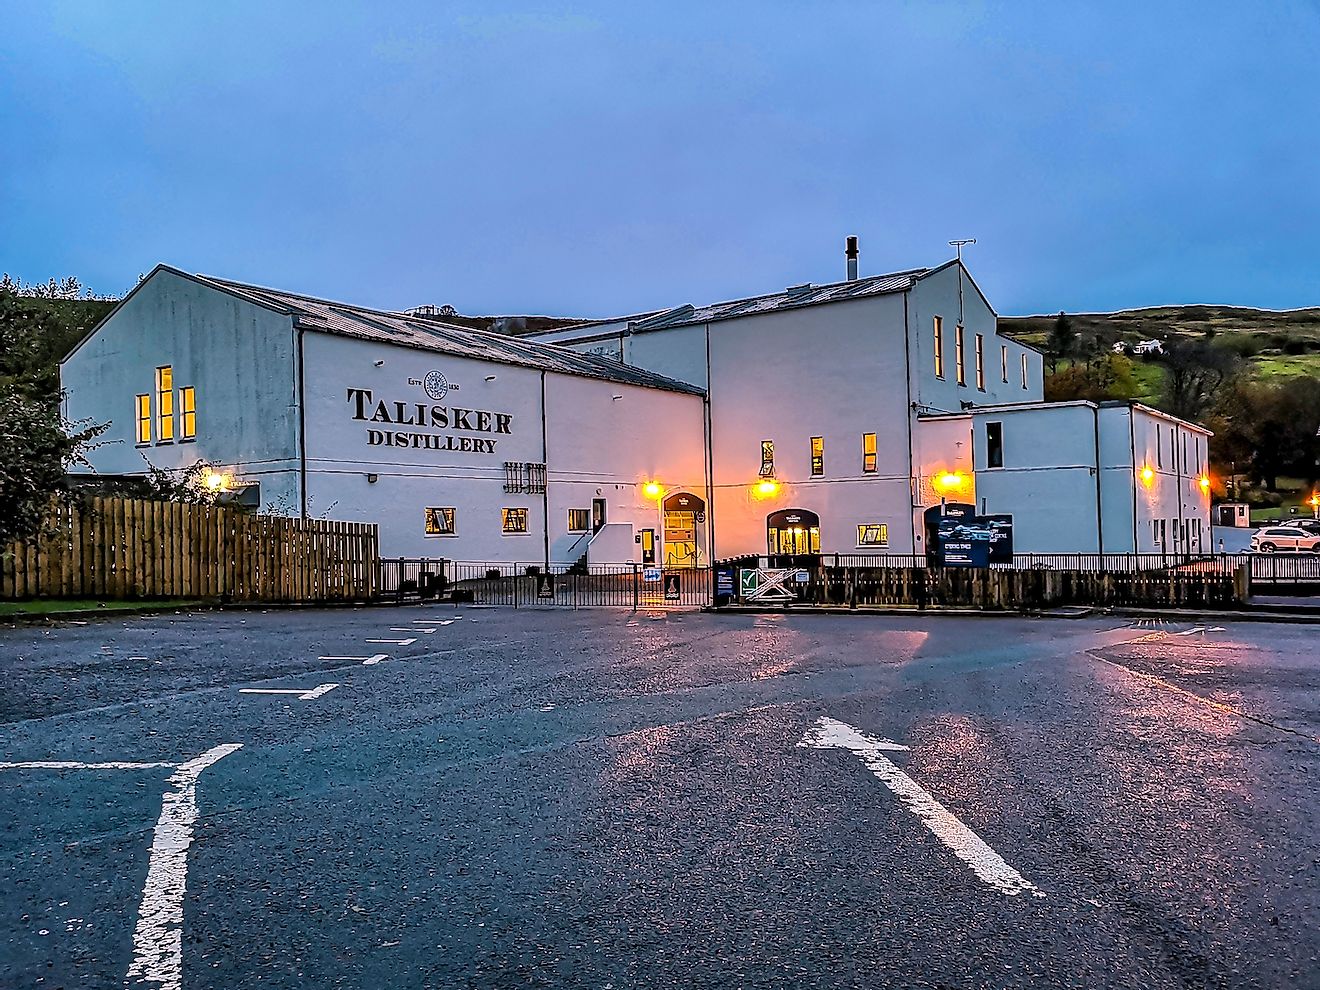 Talisker distillery is an Island single malt Scotch whisky distillery based in Carbost, Scotland on the Isle of Skye. Image credit: Lukassek/Shutterstock.com